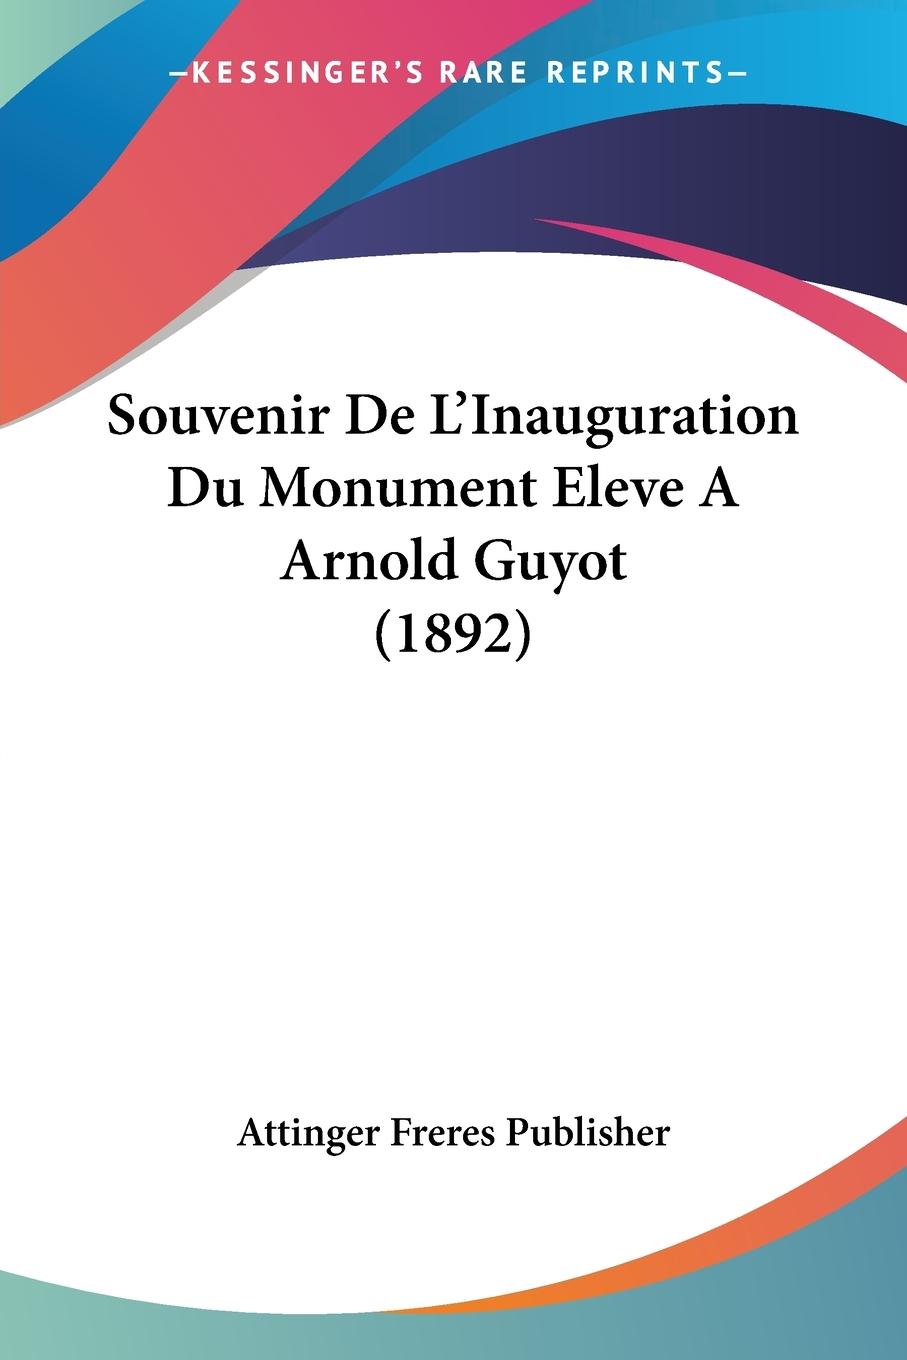 Souvenir De L Inauguration Du Monument Eleve A Arnold Guyot (1892) - Attinger Freres Publisher